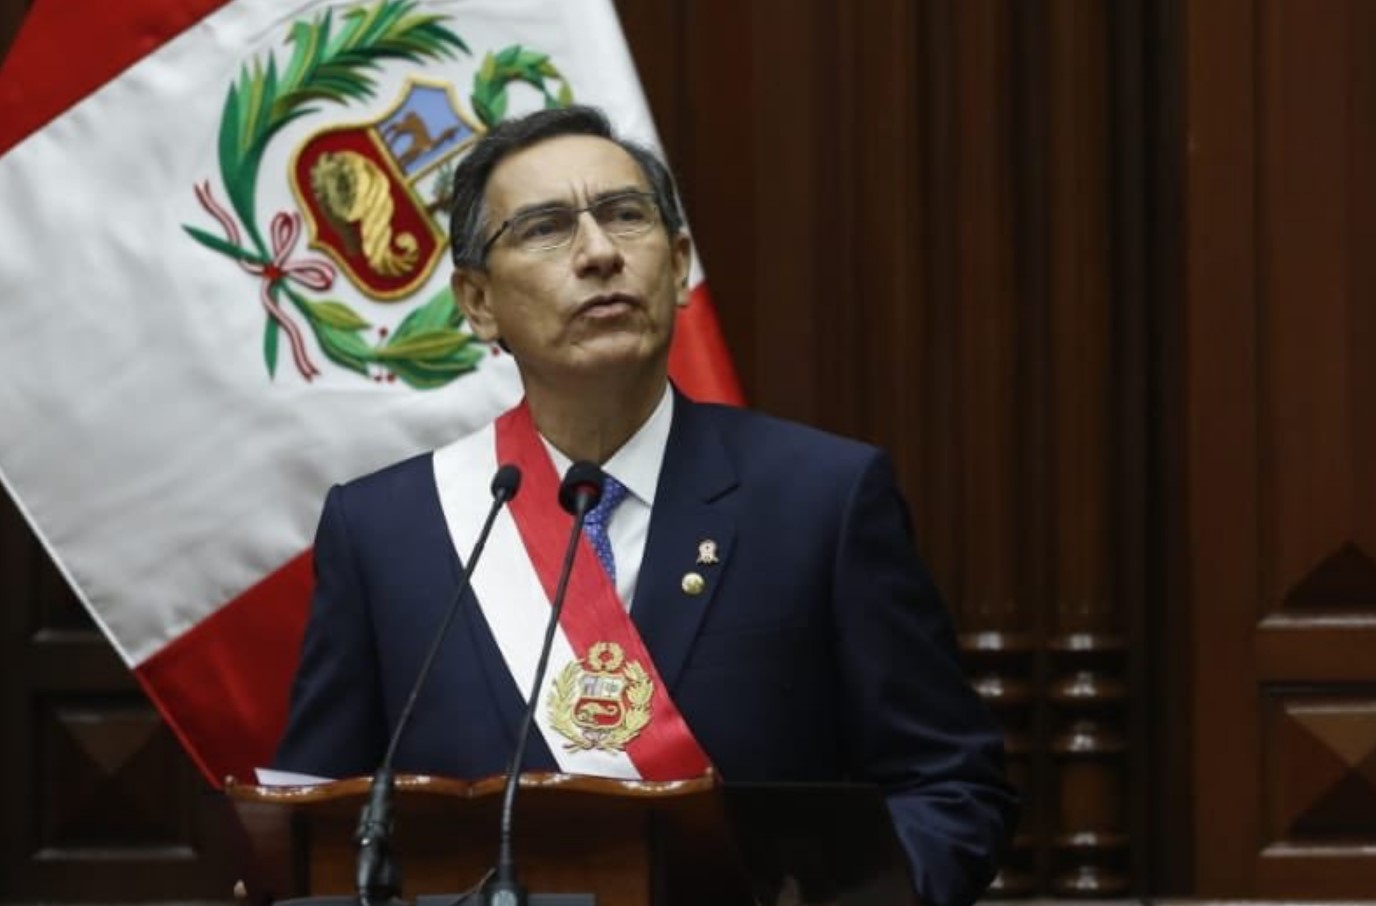 Martín Vizcarra, presidente de Perú. Foto: Twitter / Martín Vizcarra